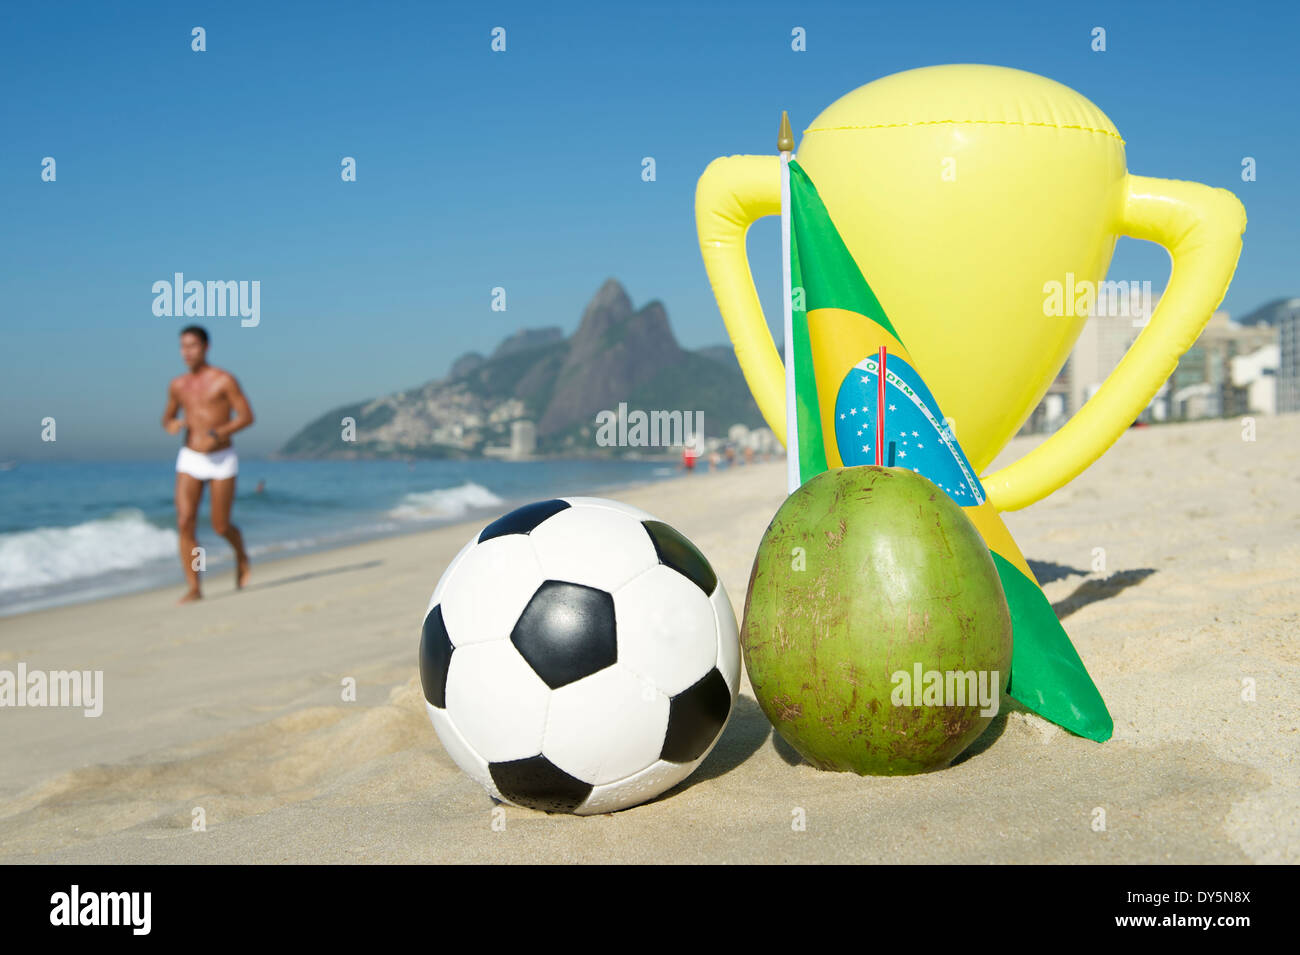 Le Brésil champion soccer trophy avec football, noix de coco, et drapeau brésilien sur la plage d'Ipanema Rio de Janeiro Brésil Banque D'Images